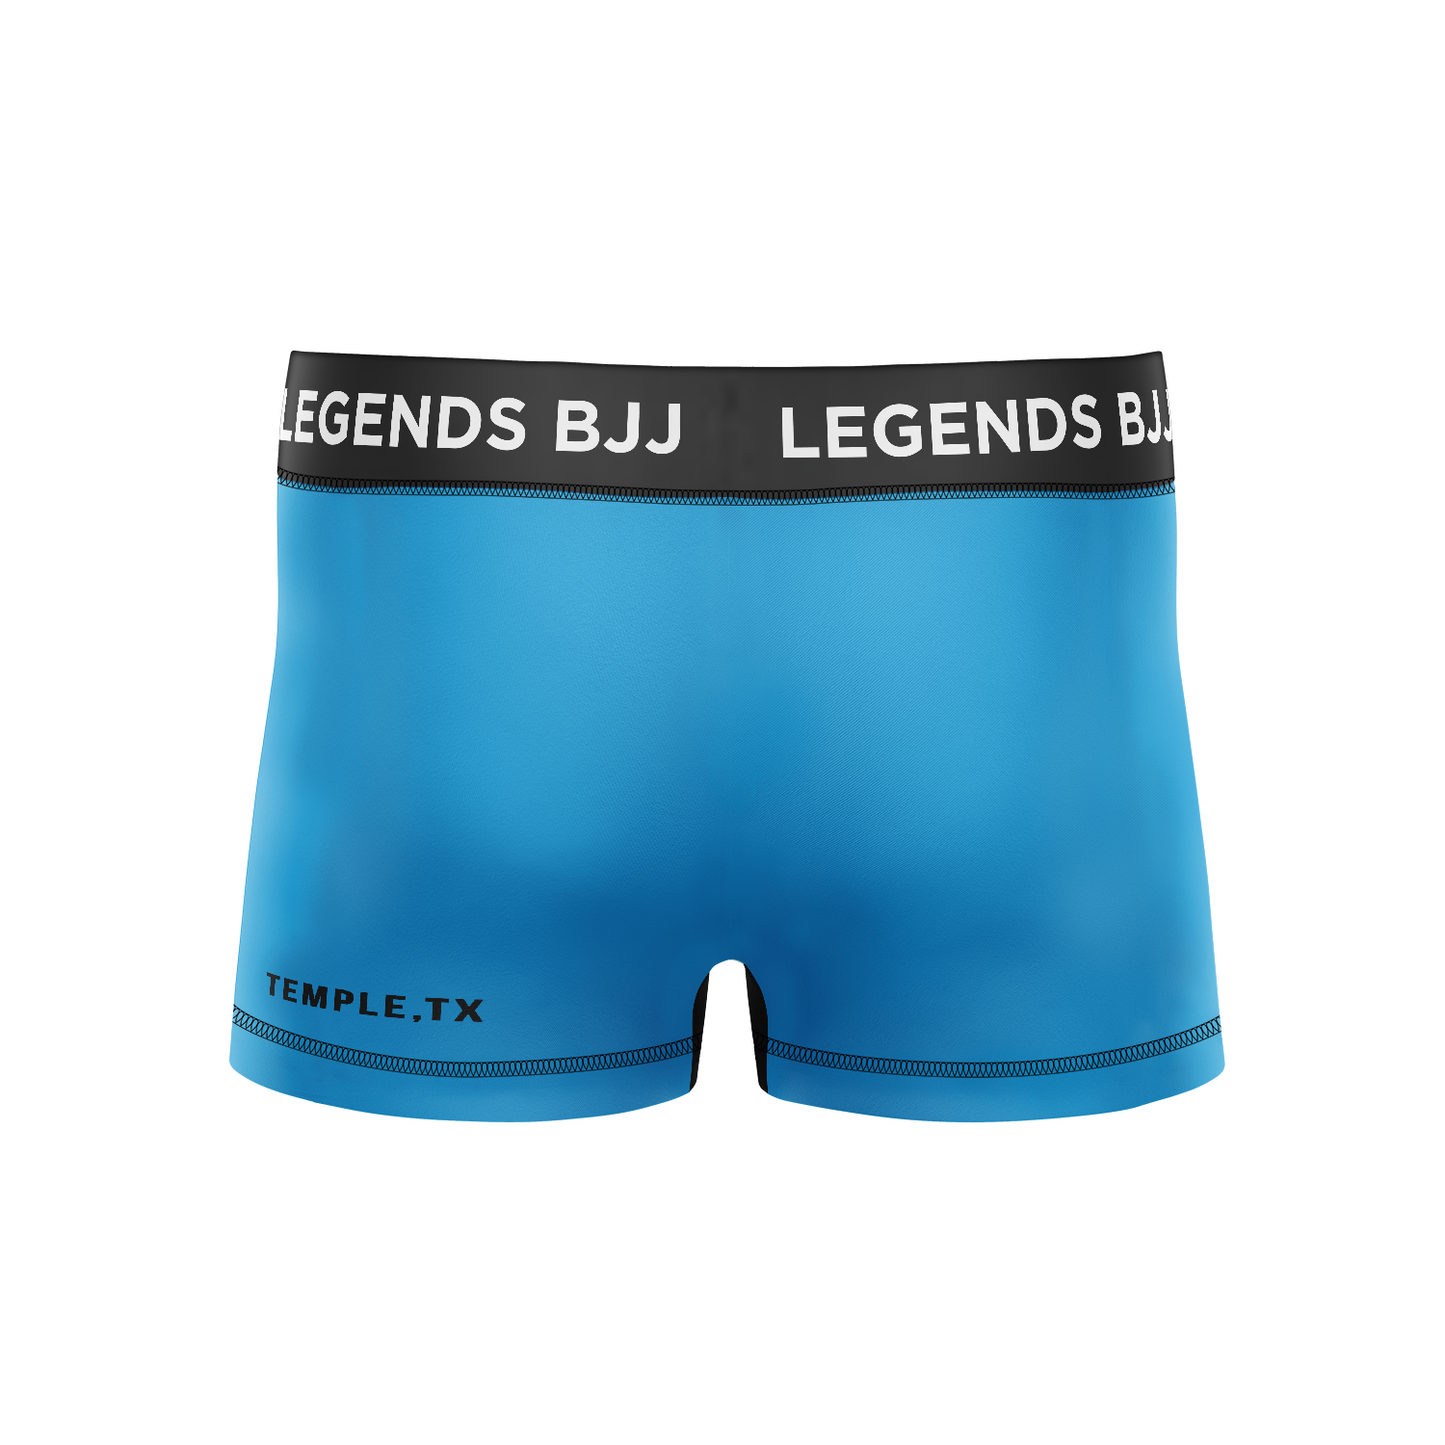 Legends BJJ men's classic vale tudo Standard Issue, blue